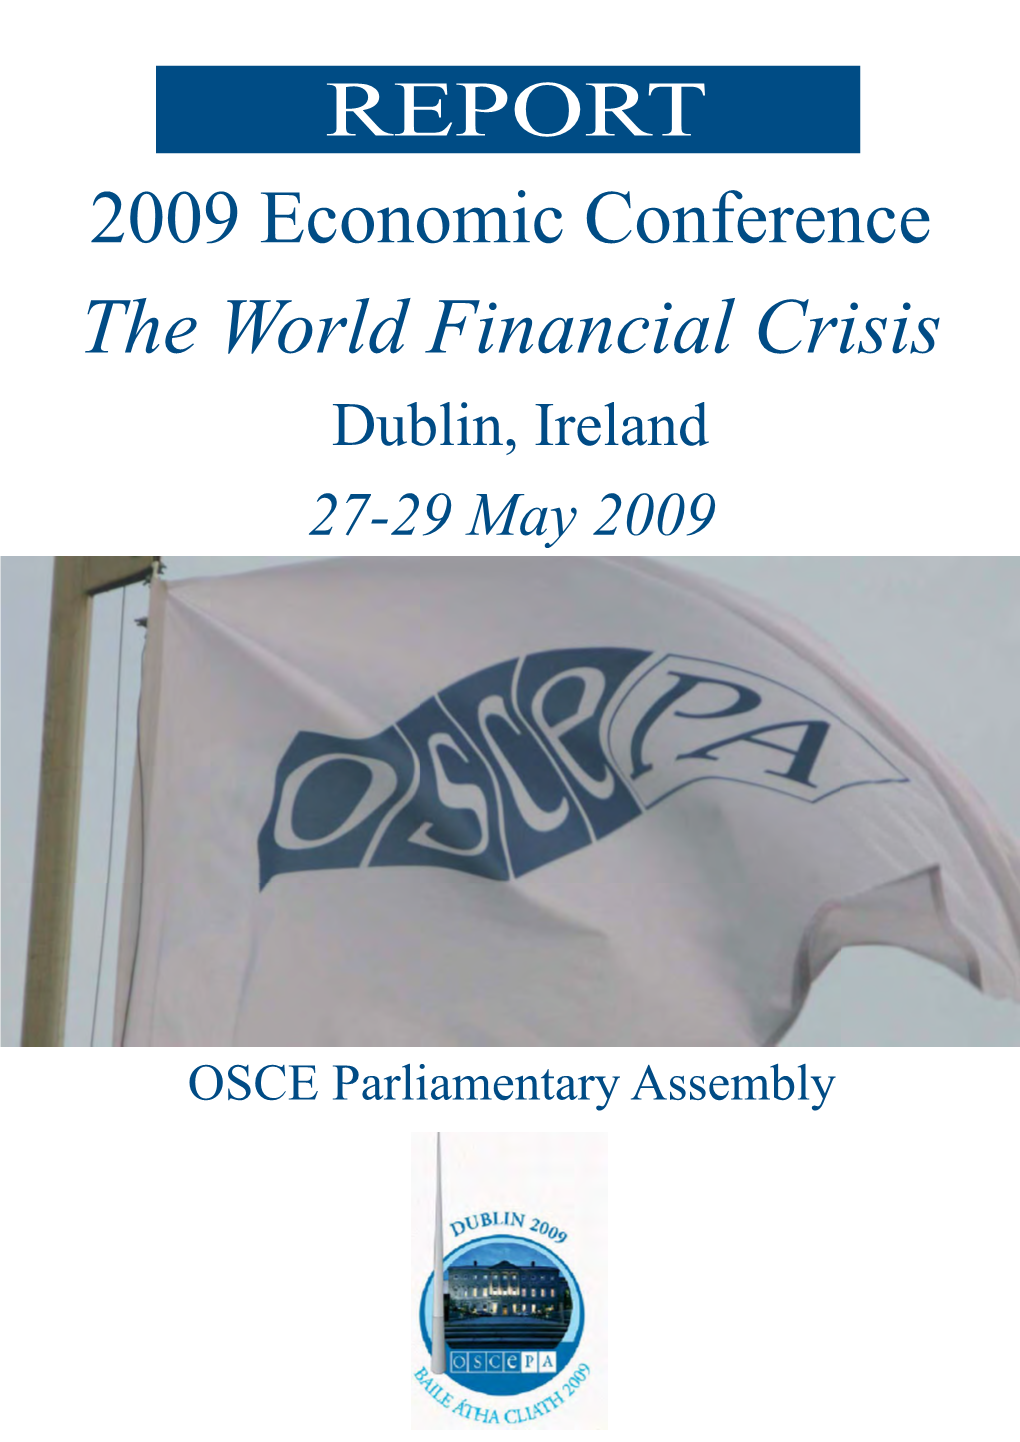 2009 Dublin Economic Conference Report